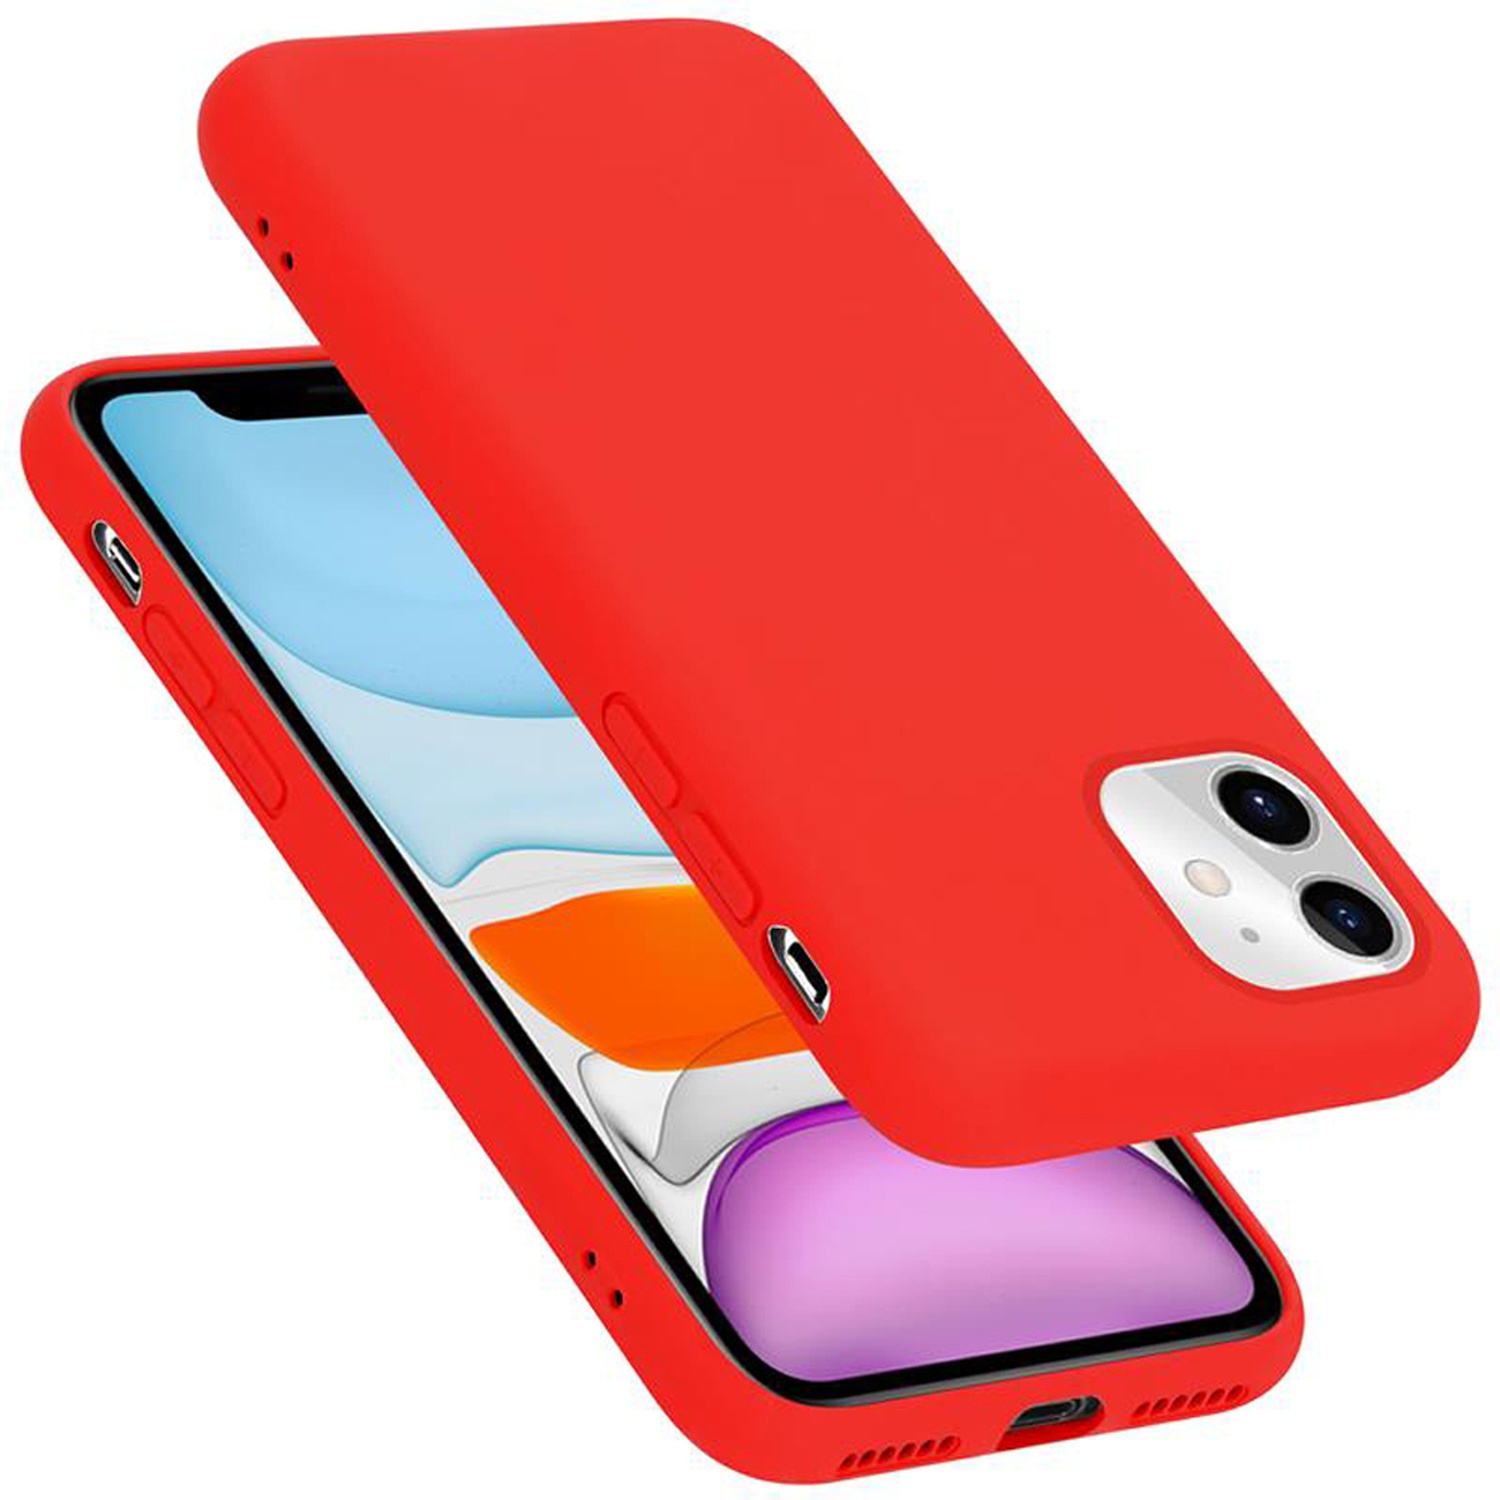 Coque pour Apple iPhone 11 en LIQUID RED Housse de protection Étui en silicone TPU flexible